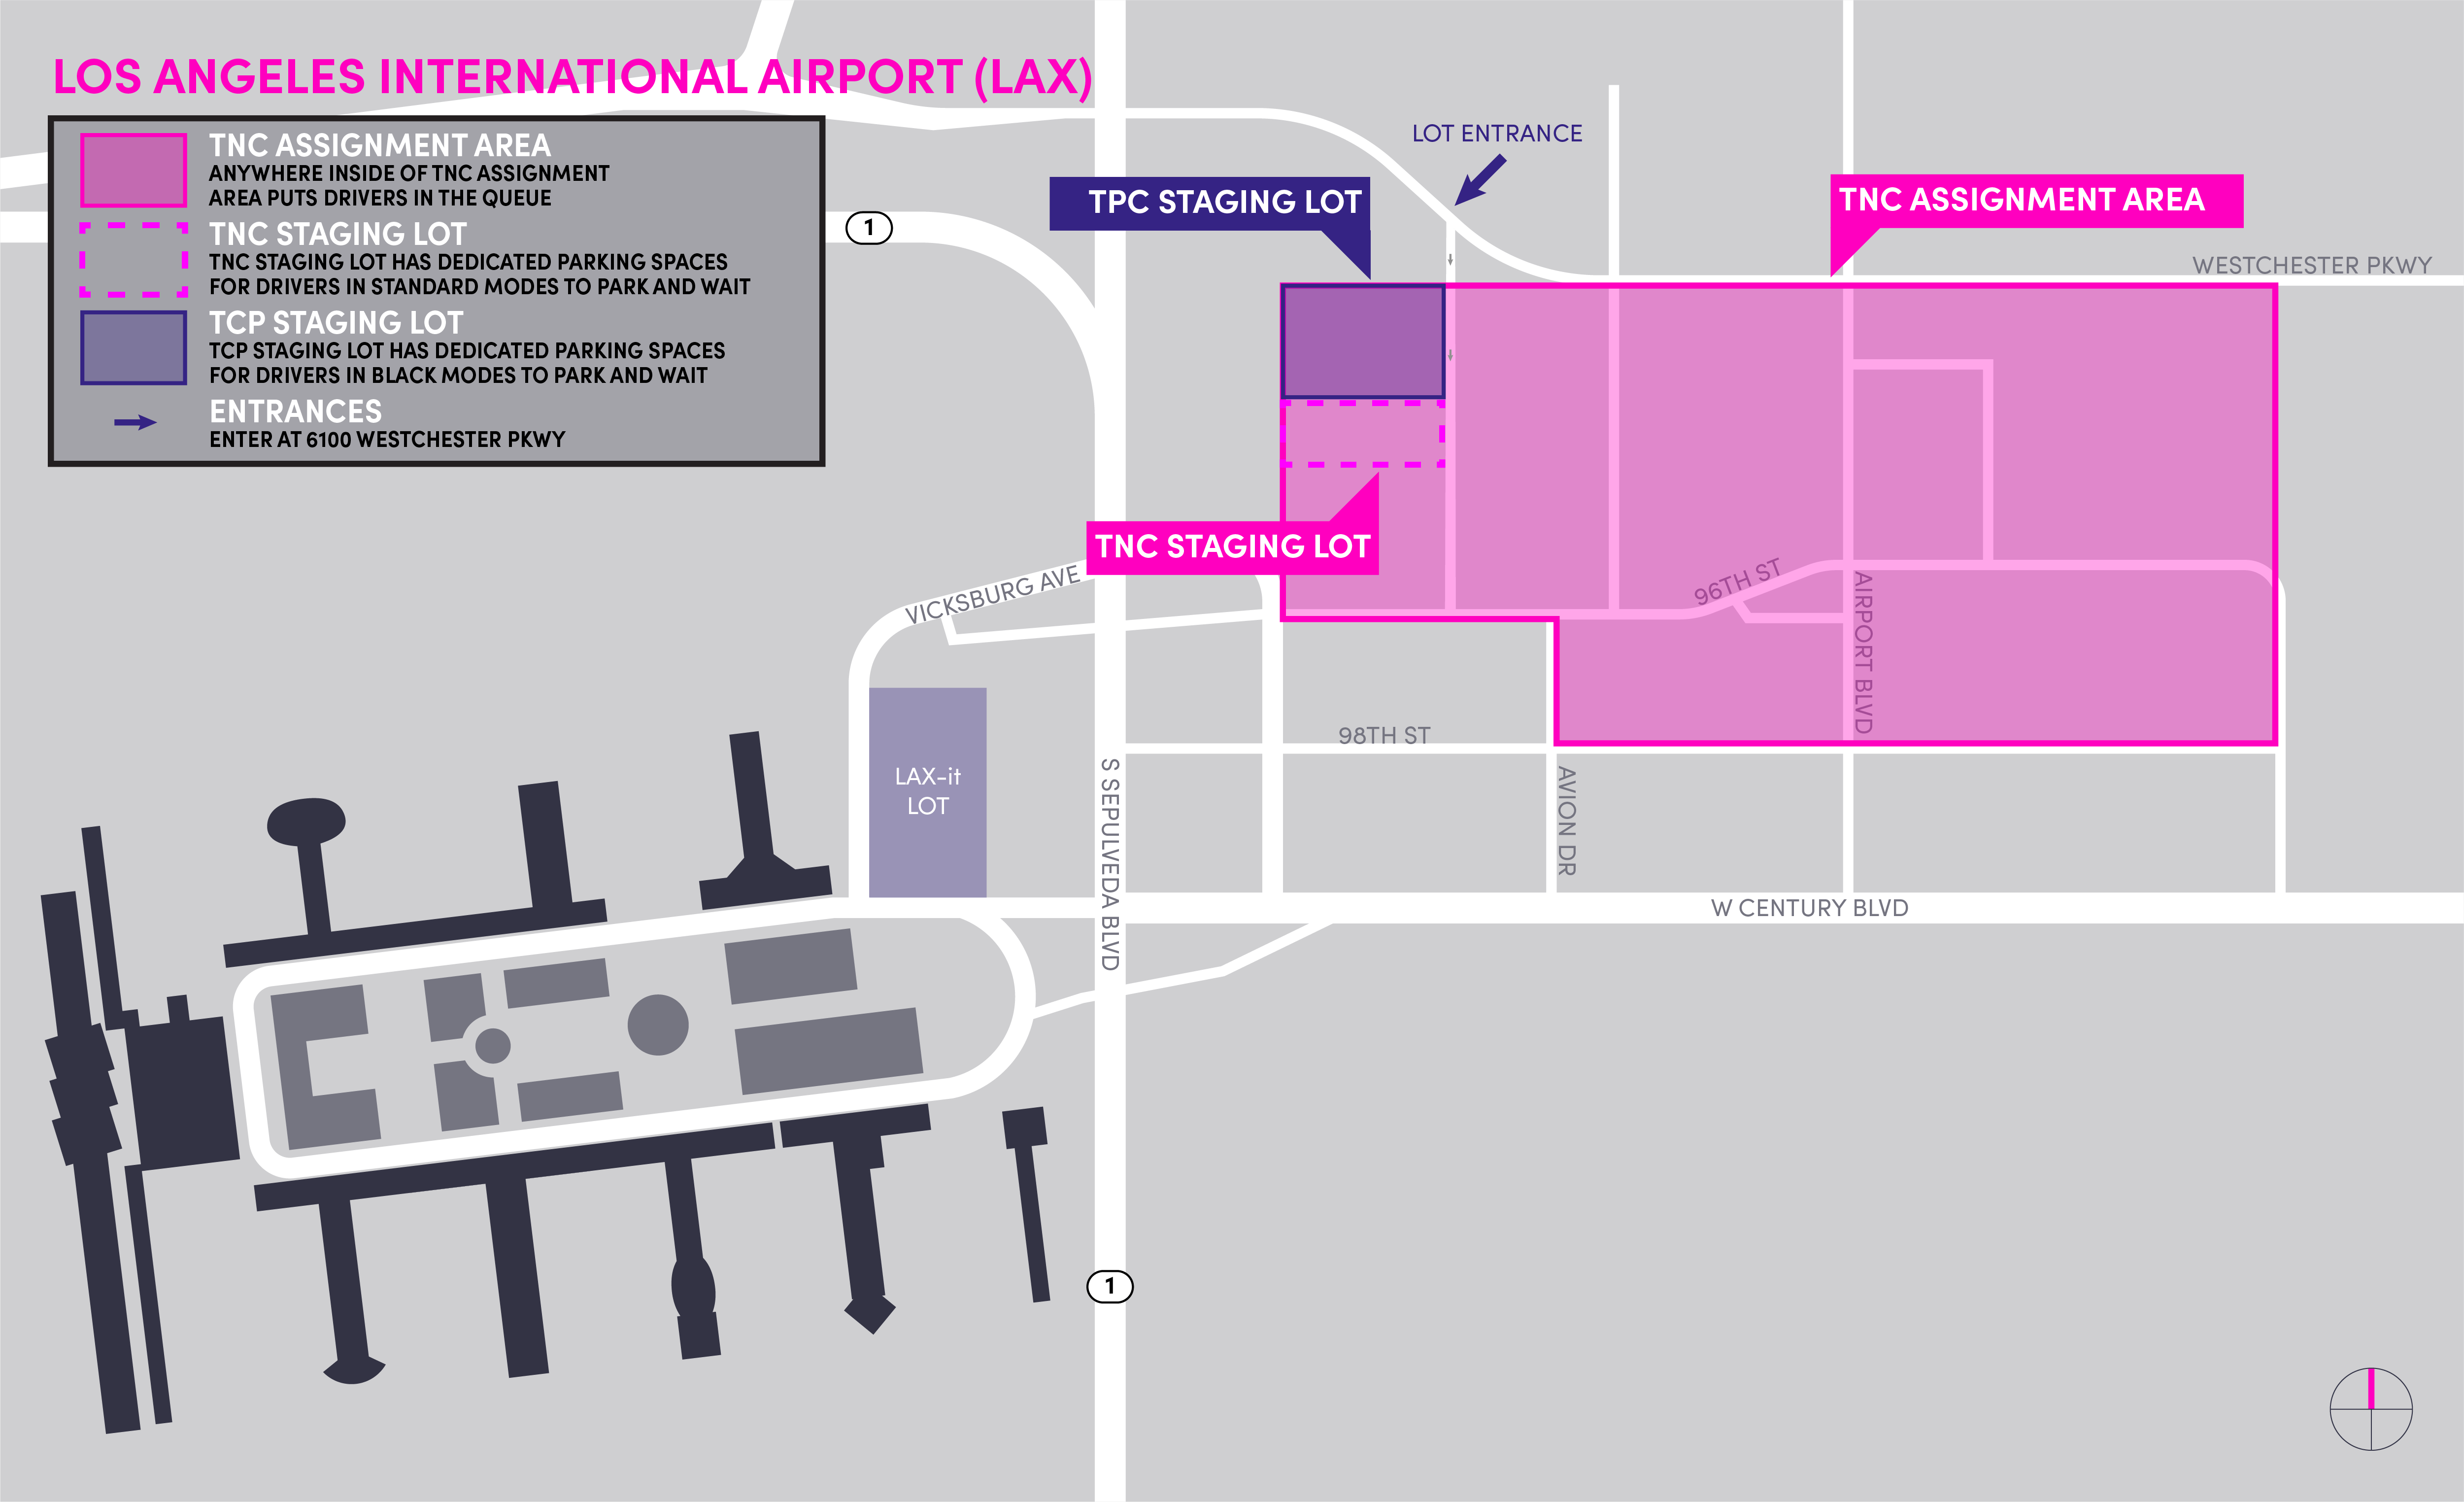 Mapa da área de espera da TNC no Los Angeles International Airport